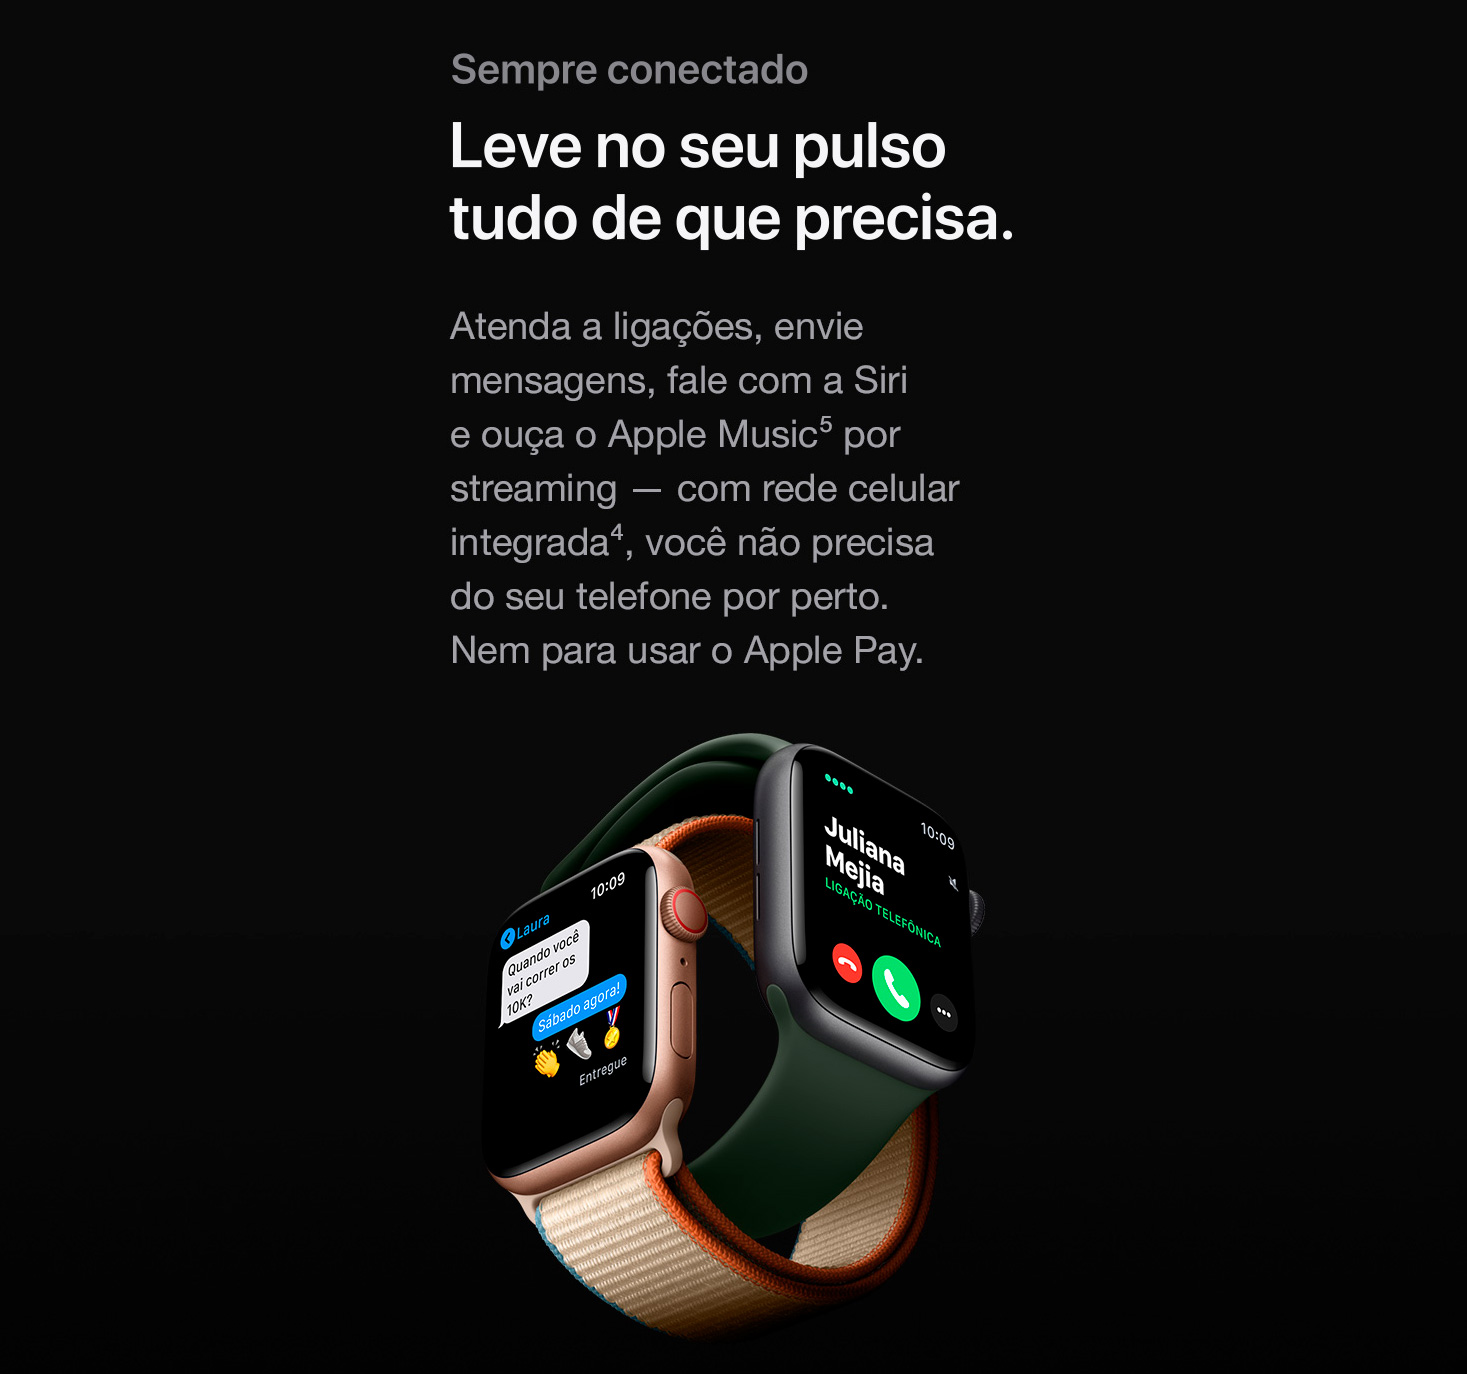  Apple Watch Series 6 (GPS) 40mm Caixa Dourada de Alumínio com Pulseira Esportiva Areia-Rosa